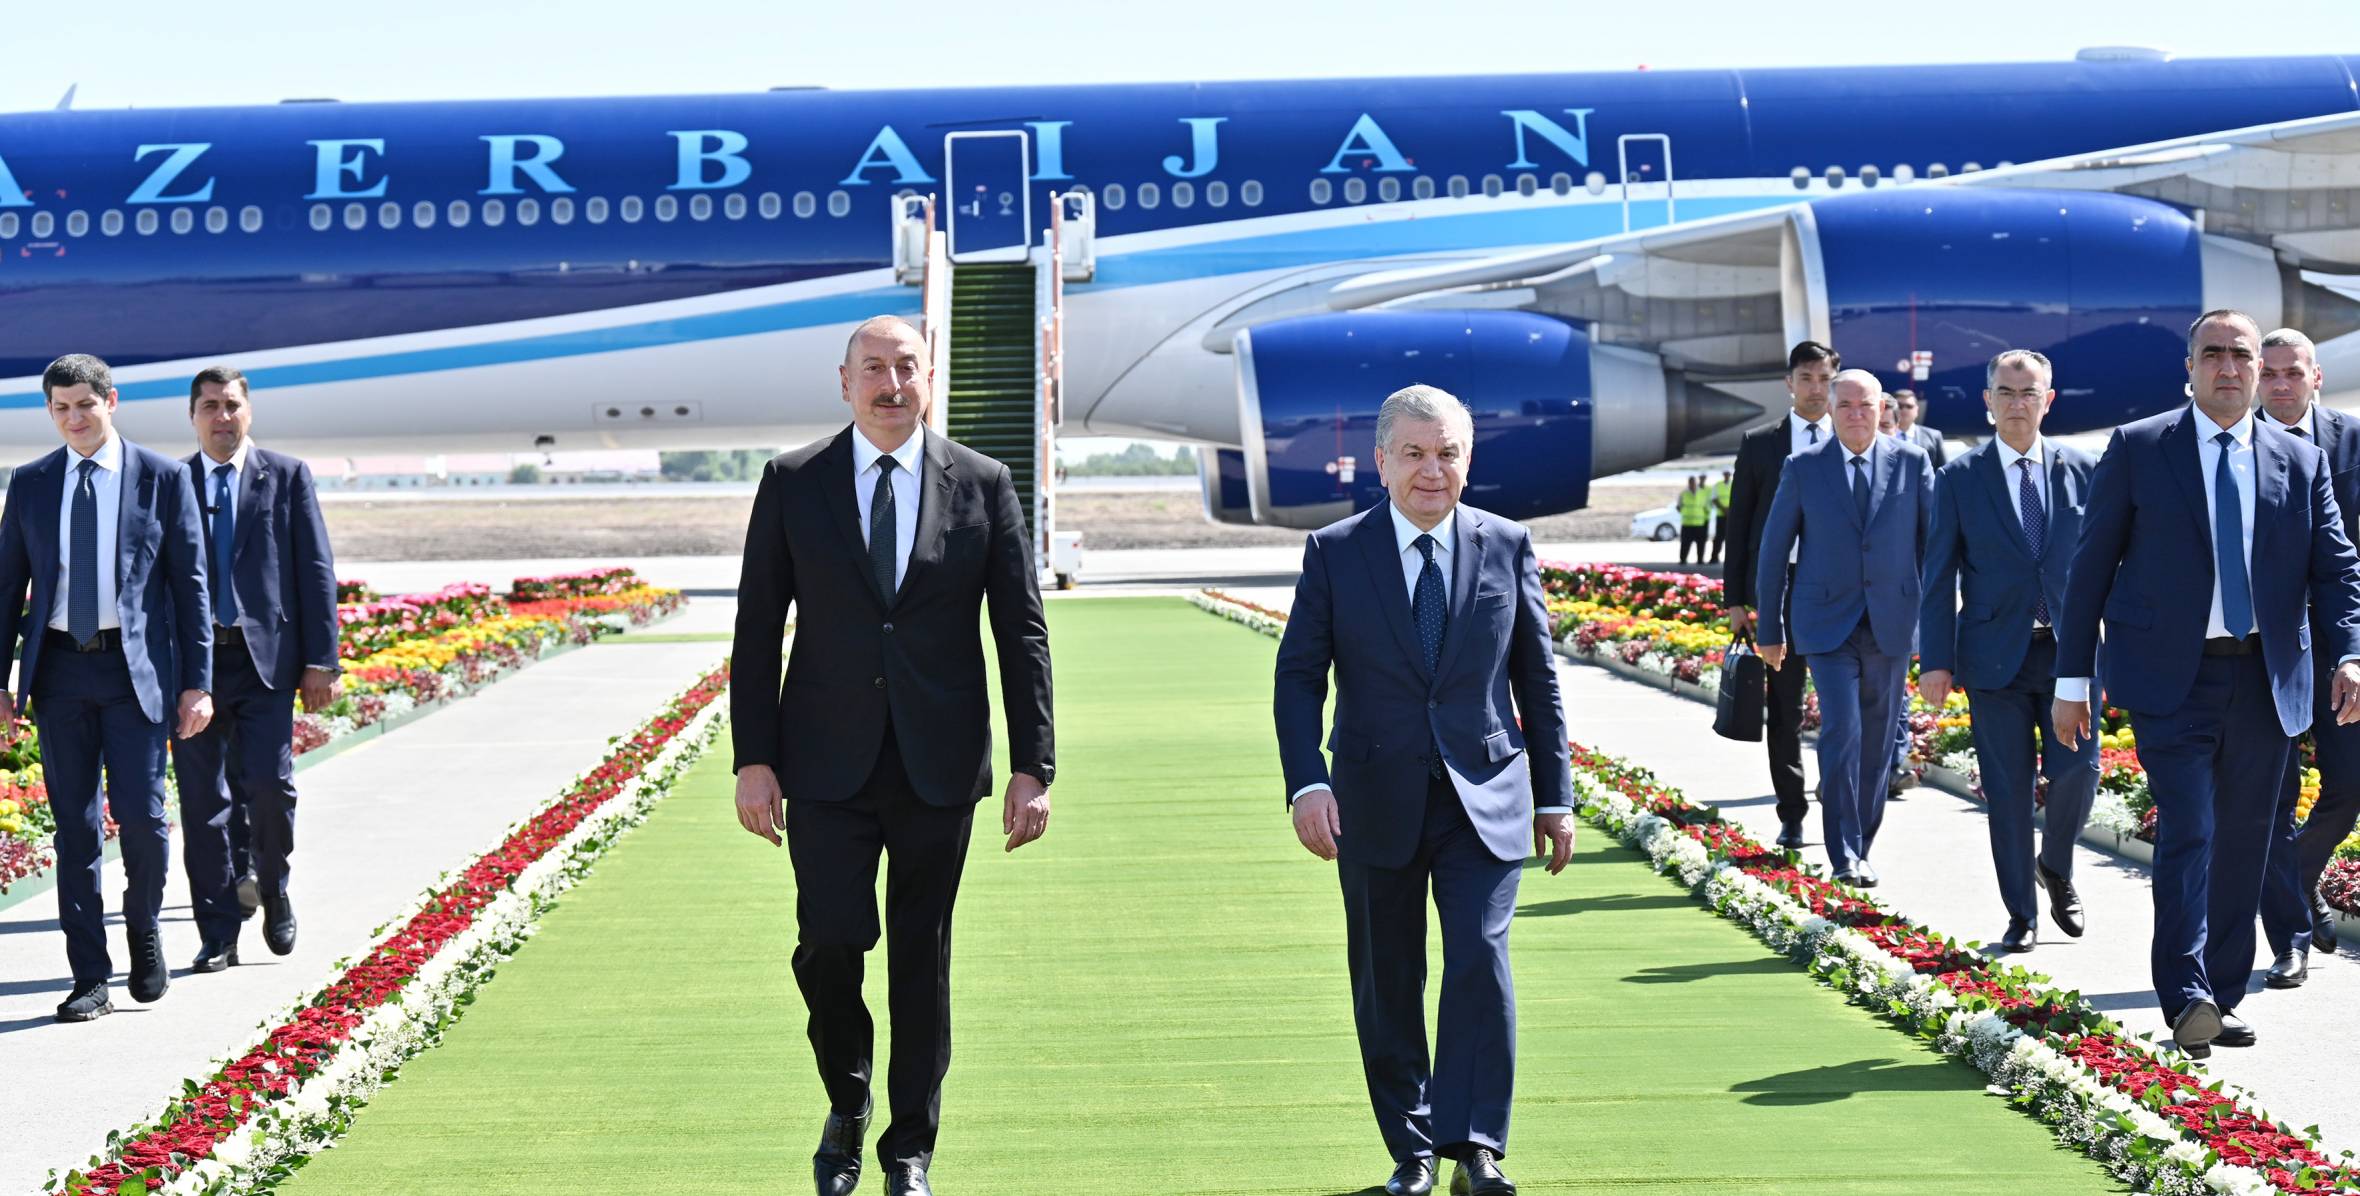 Ильхам Алиев прибыл в узбекский город Ургенч